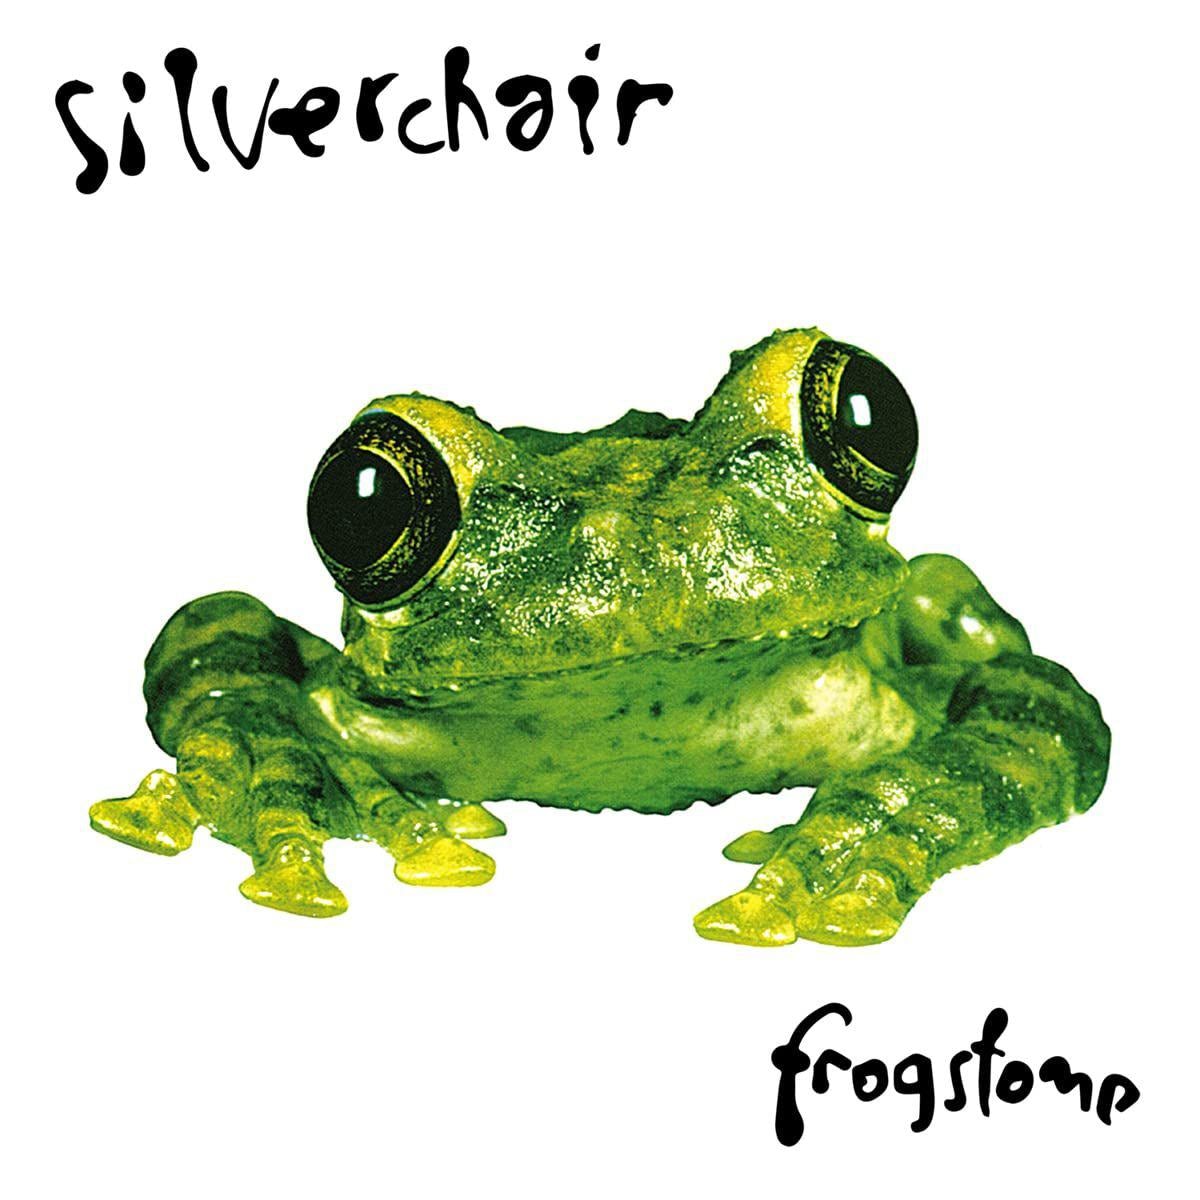 Silverchair Frogstomp Clear 2-LP